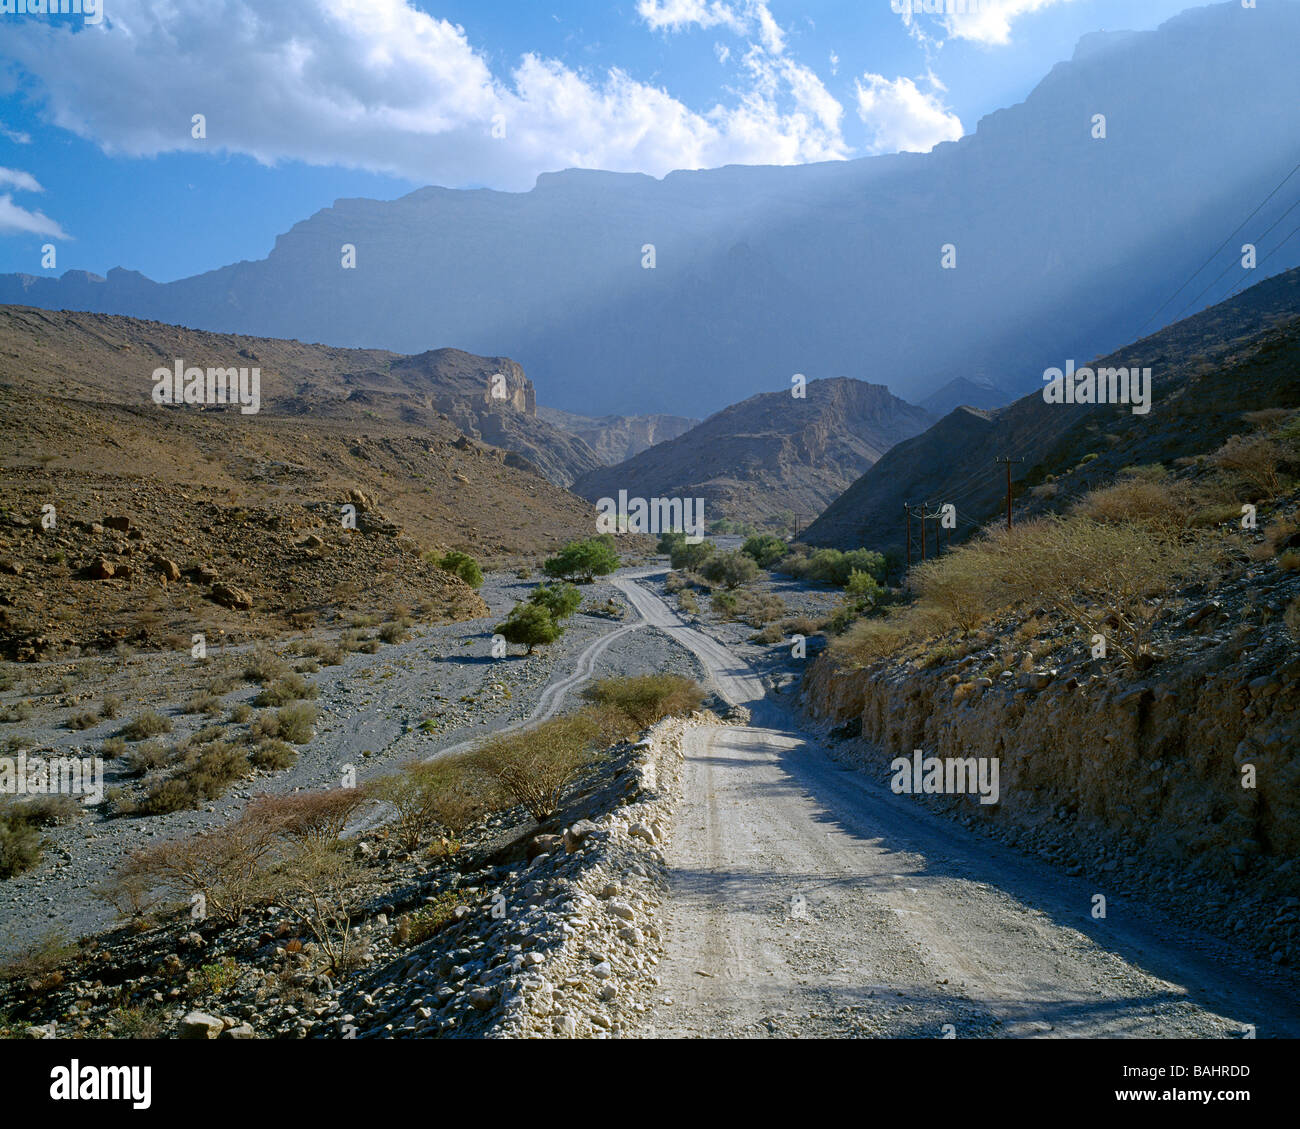 Gravel road going through the Western Hajar Mountains Schotterstrasse durch die Bergregion des westlichen Hajar Gebirges Stock Photo